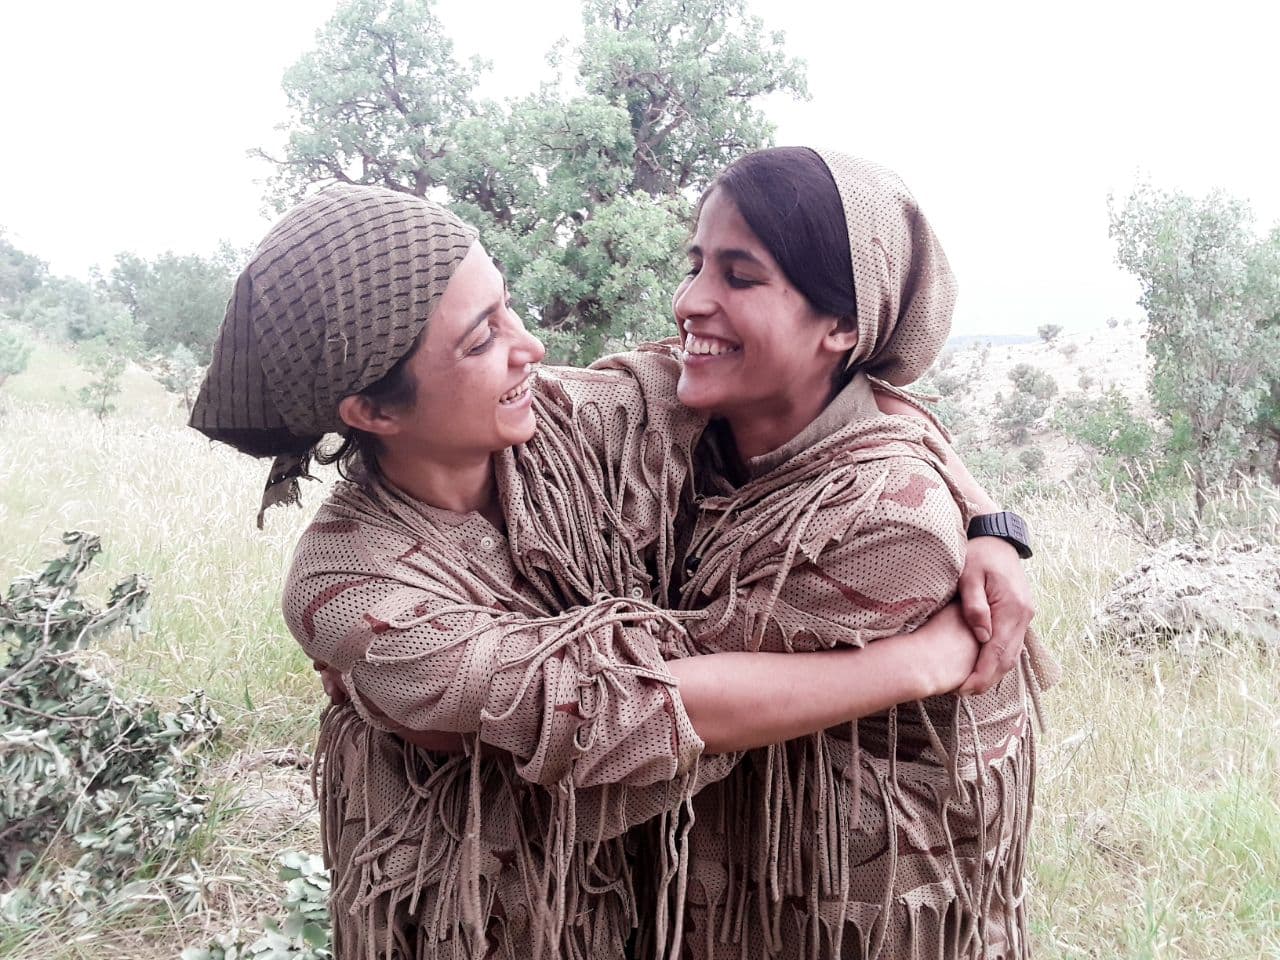 KÜRT HALKININ EN BÜYÜK SİLAHI PKK’DİR